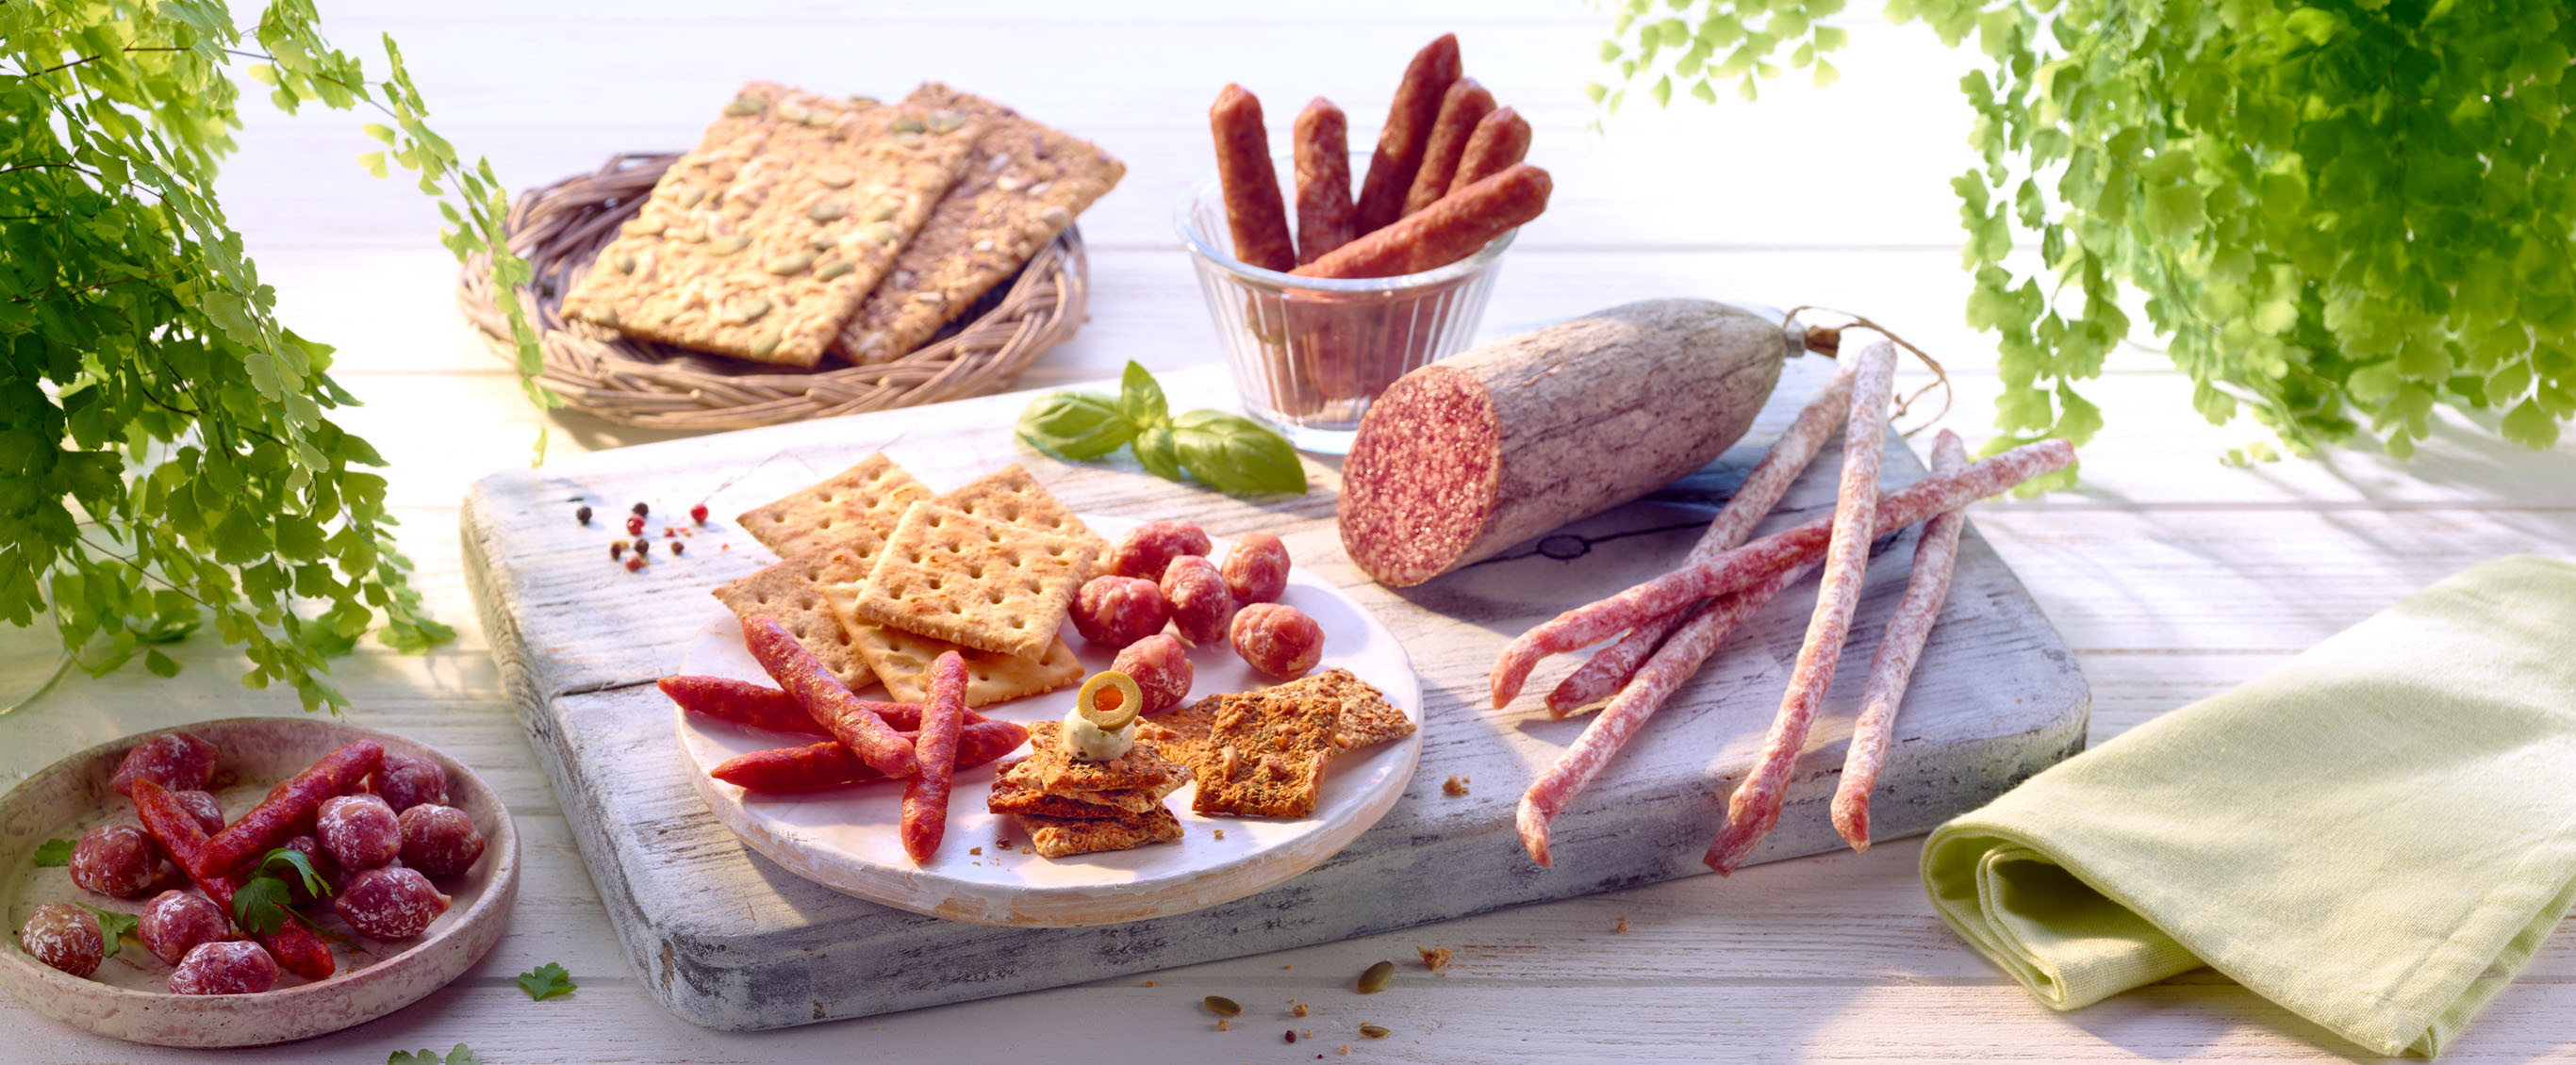 advertising - wurst - arrangement mit salamiprodukten und crackern